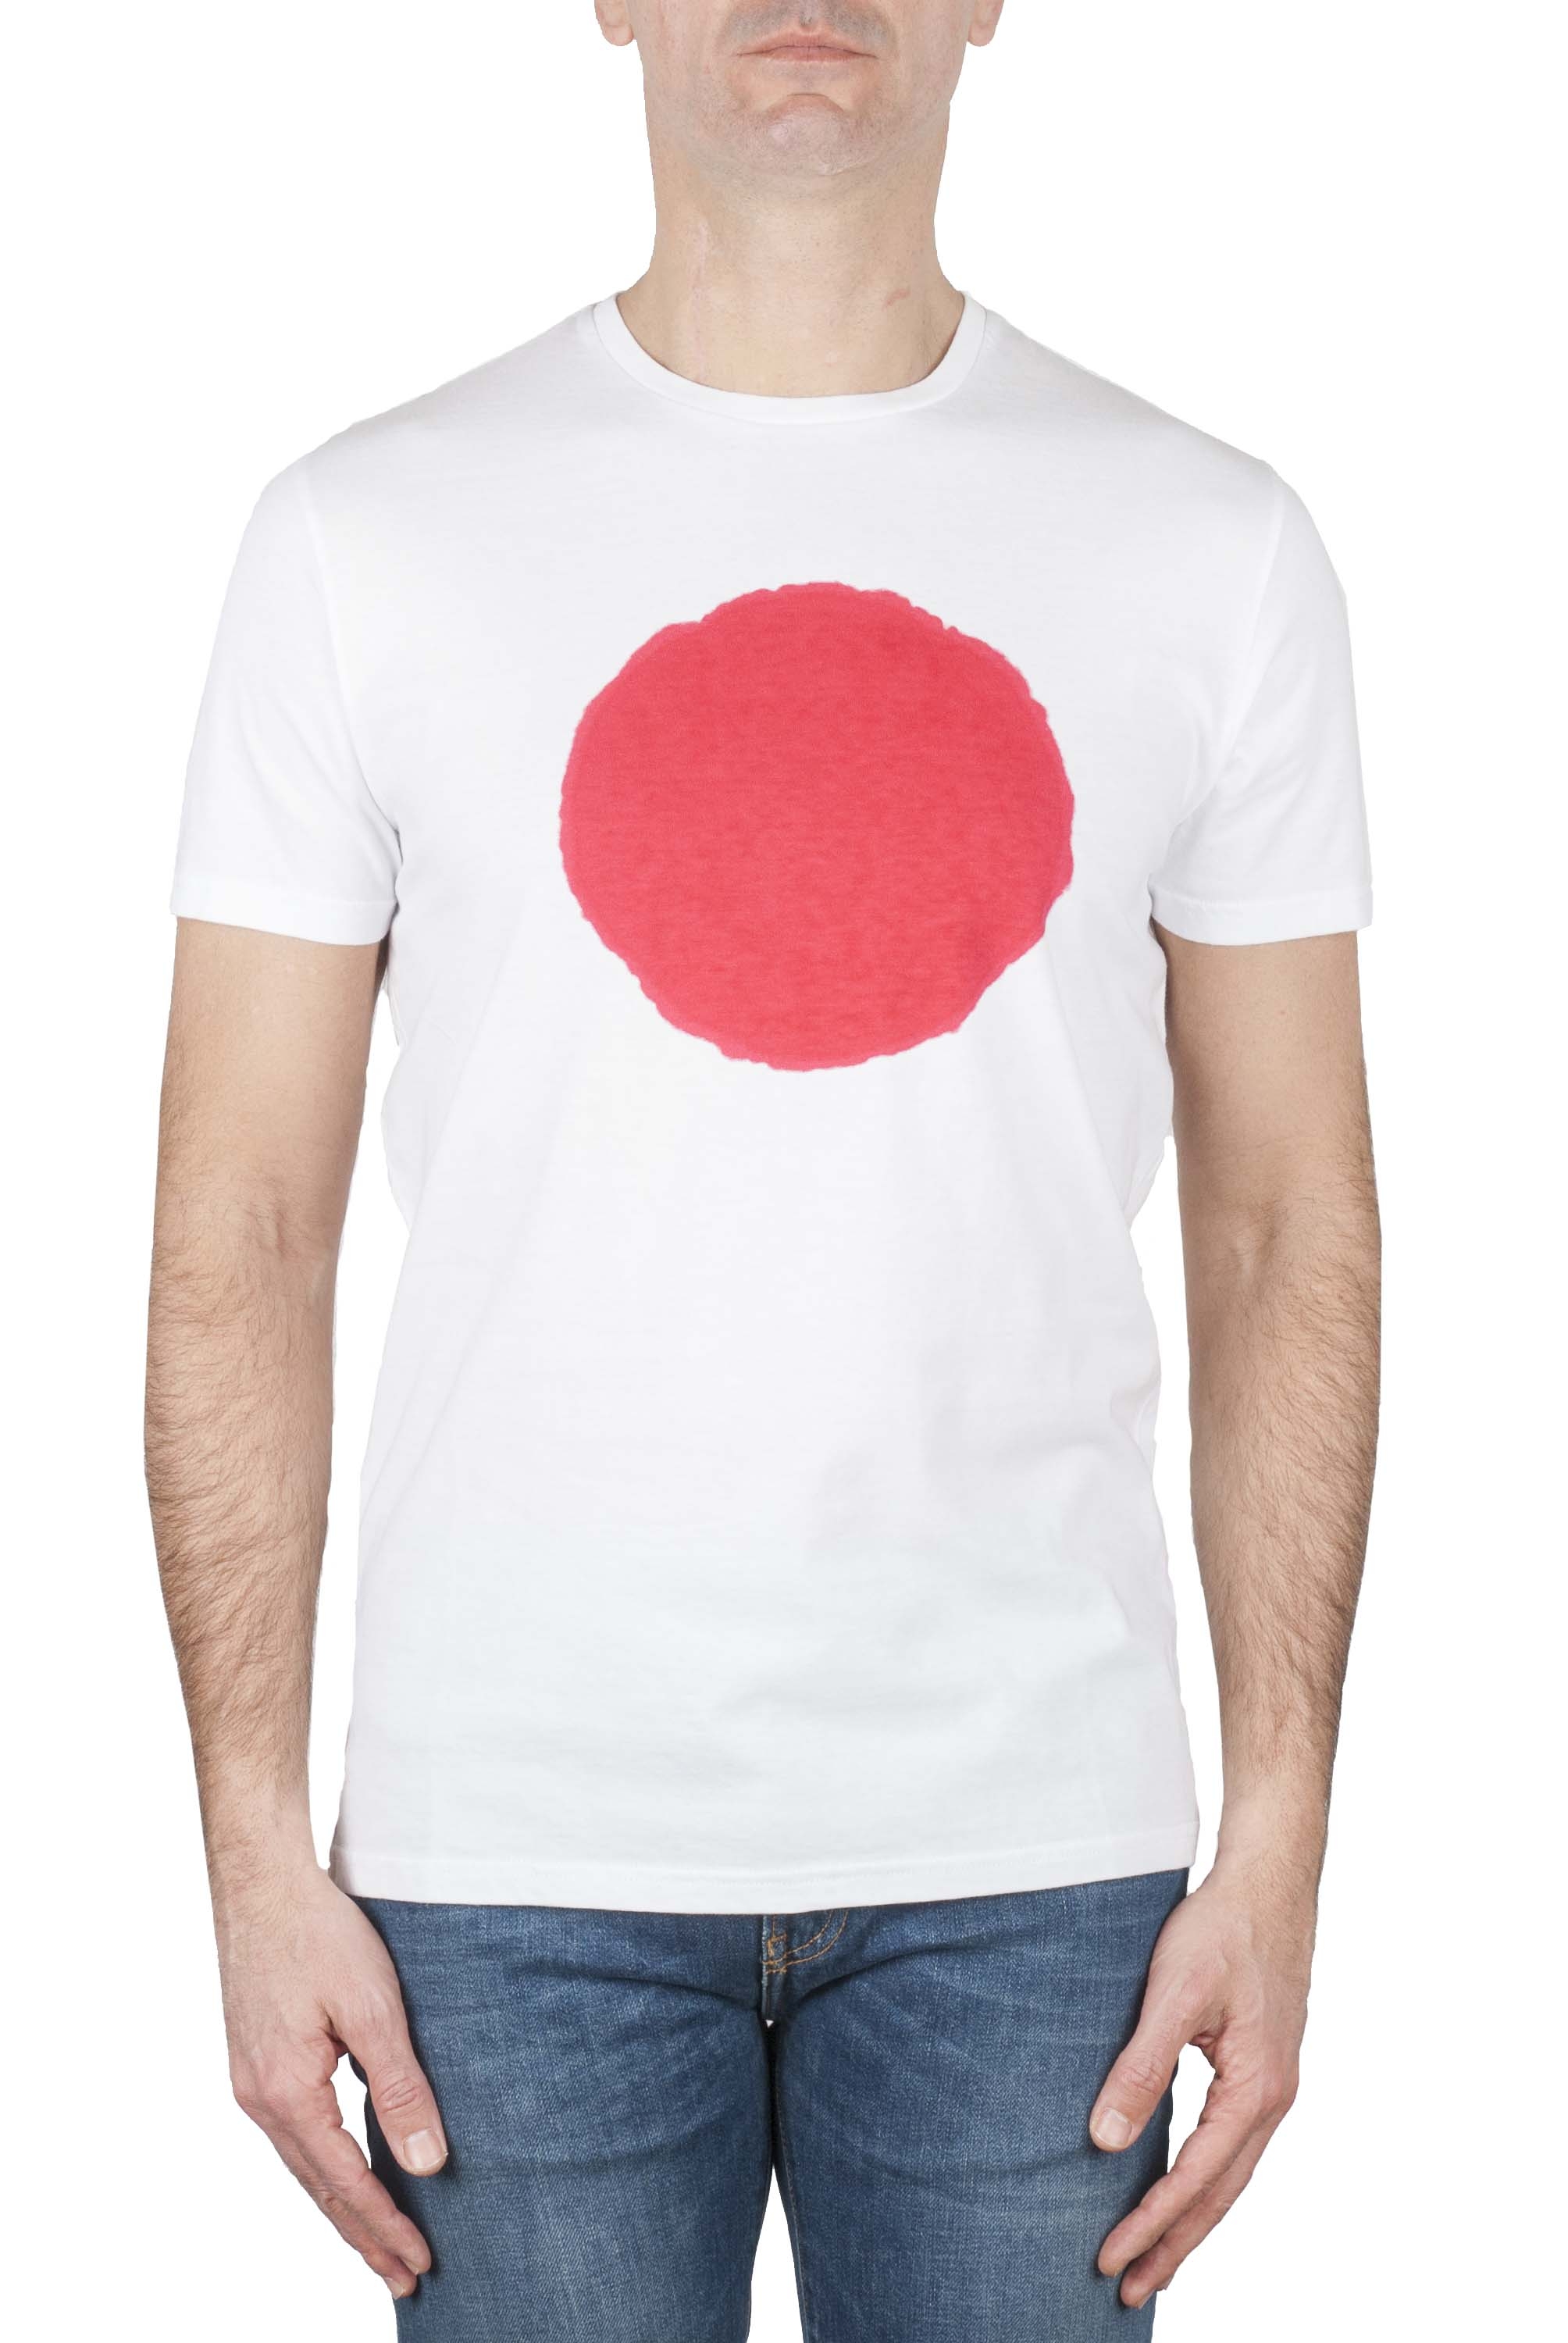 SBU 01170_19AW Clásica camiseta de cuello redondo manga corta de algodón roja y blanca gráfica impresa 01